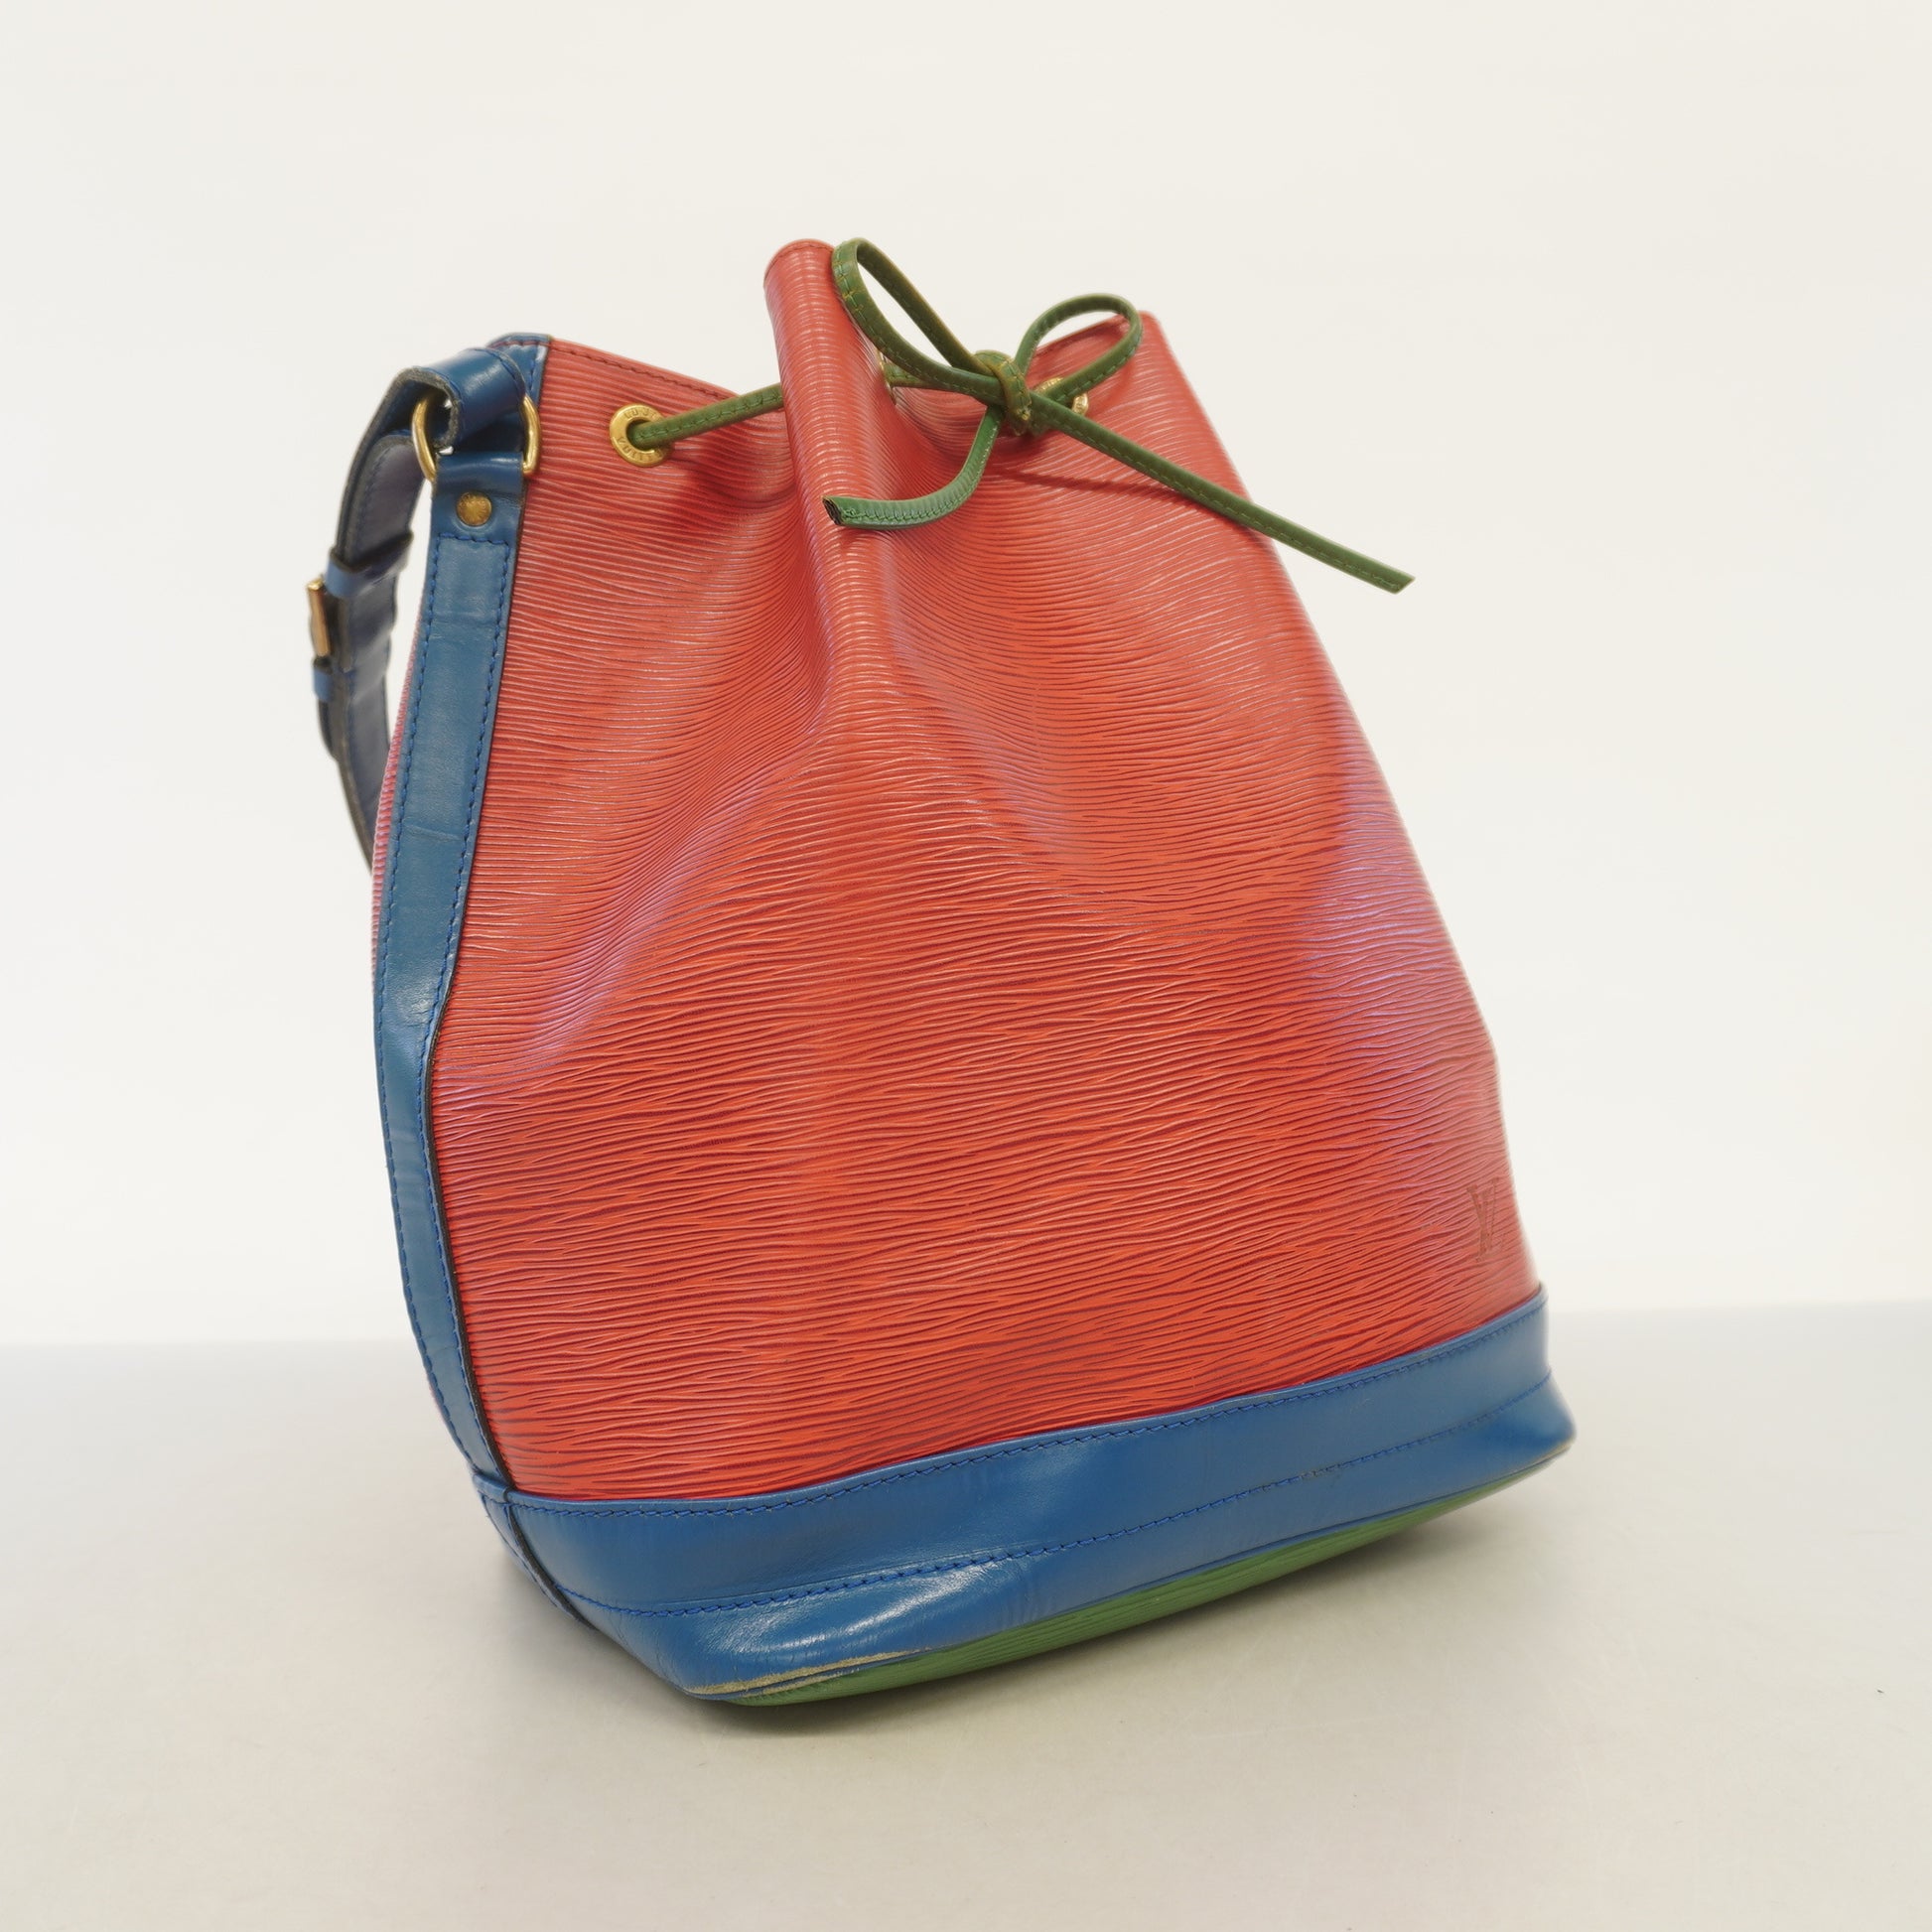 3ac2816] Auth Louis Vuitton Shoulder Bag Epi Noe M44084 Castilian  Red/Toledo Blue/Porneo Green